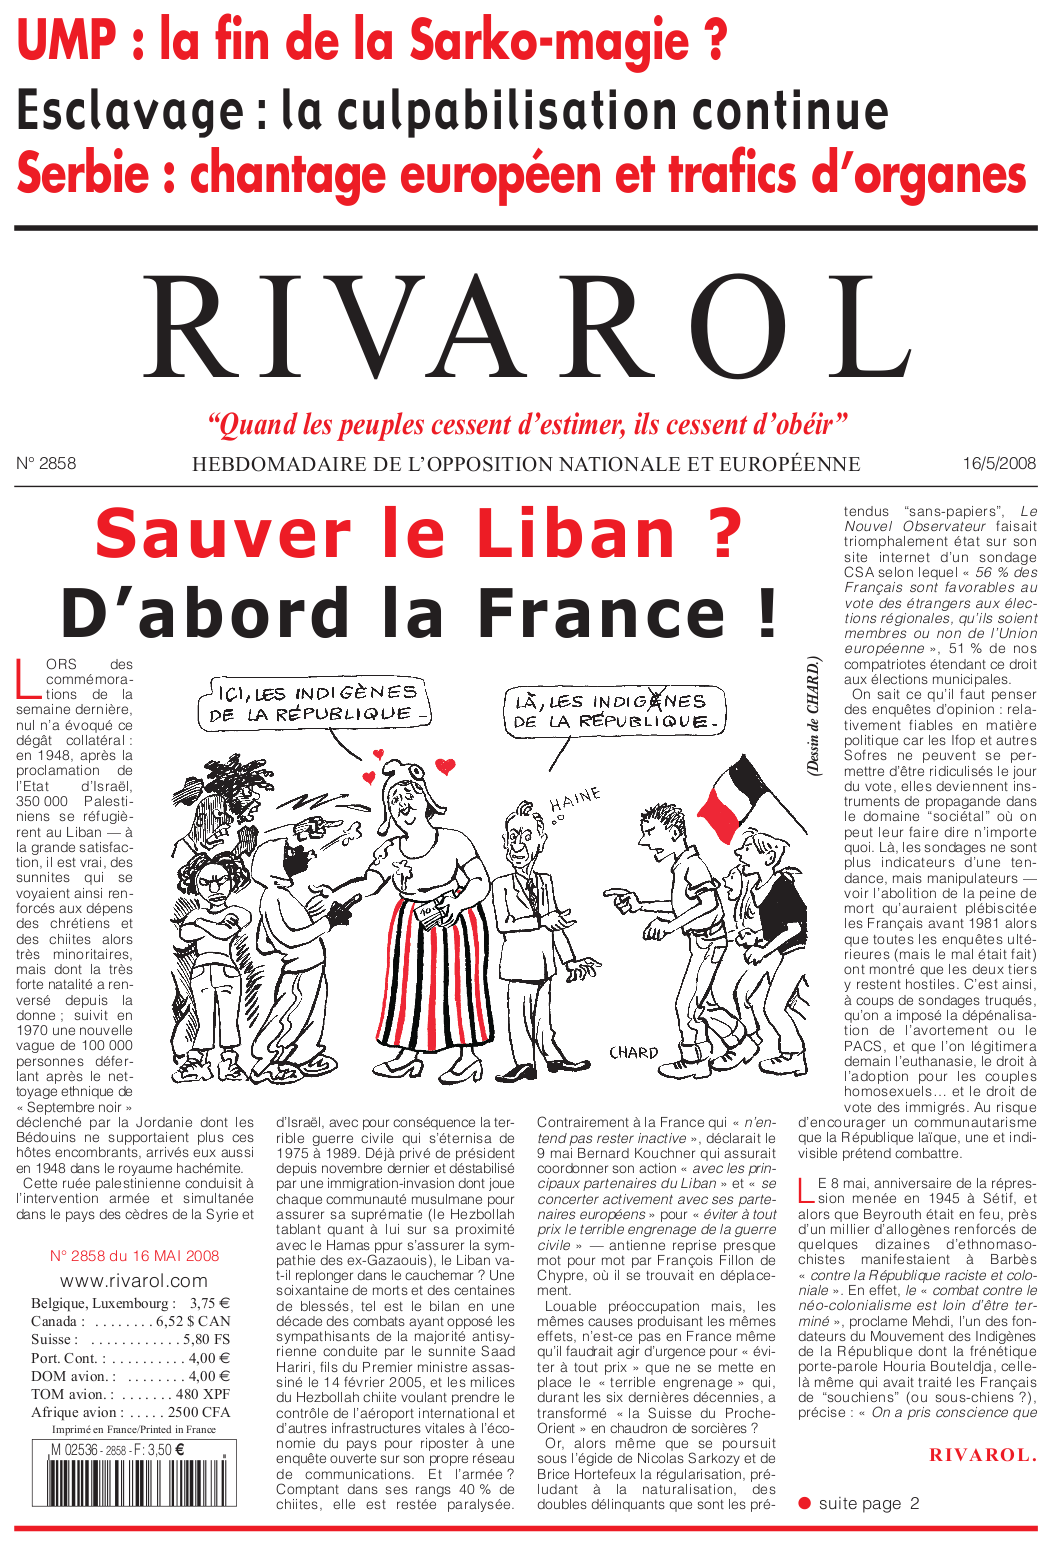 Rivarol n°2858 version numérique (PDF)